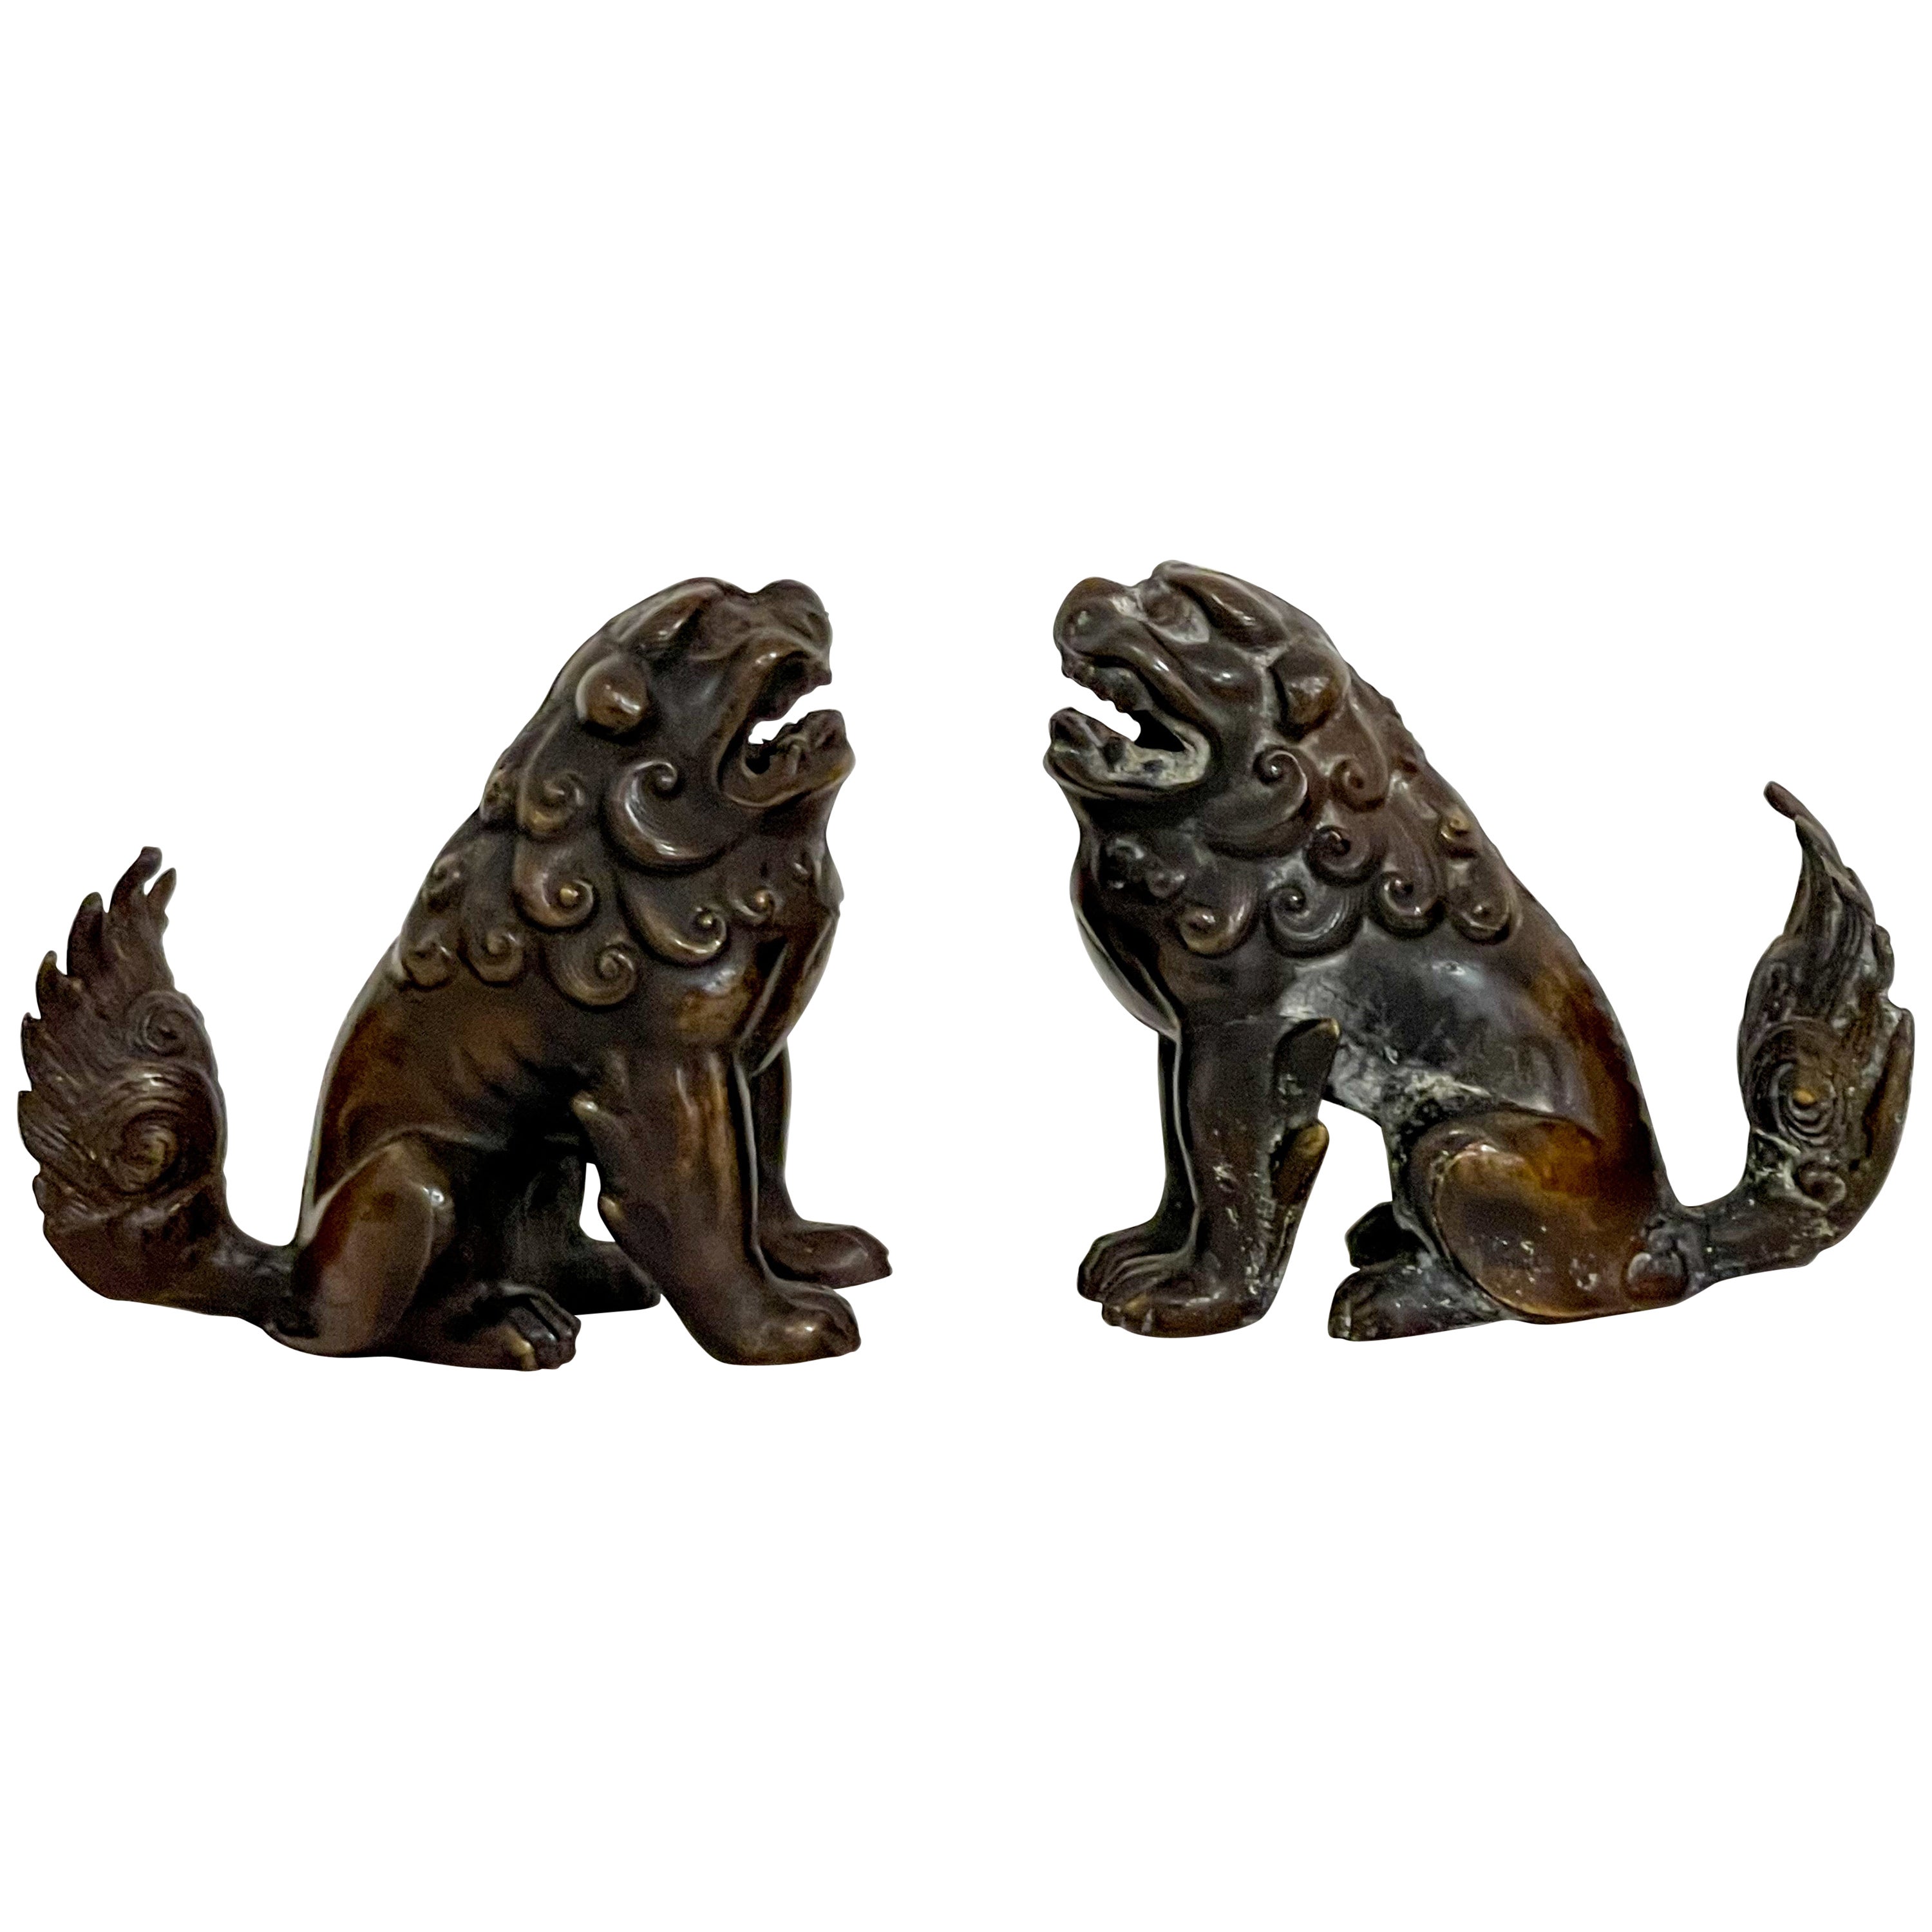 Début du 20e siècle. Paire de figurines asiatiques en bronze représentant des chiens ou des lions en guise de nourriture